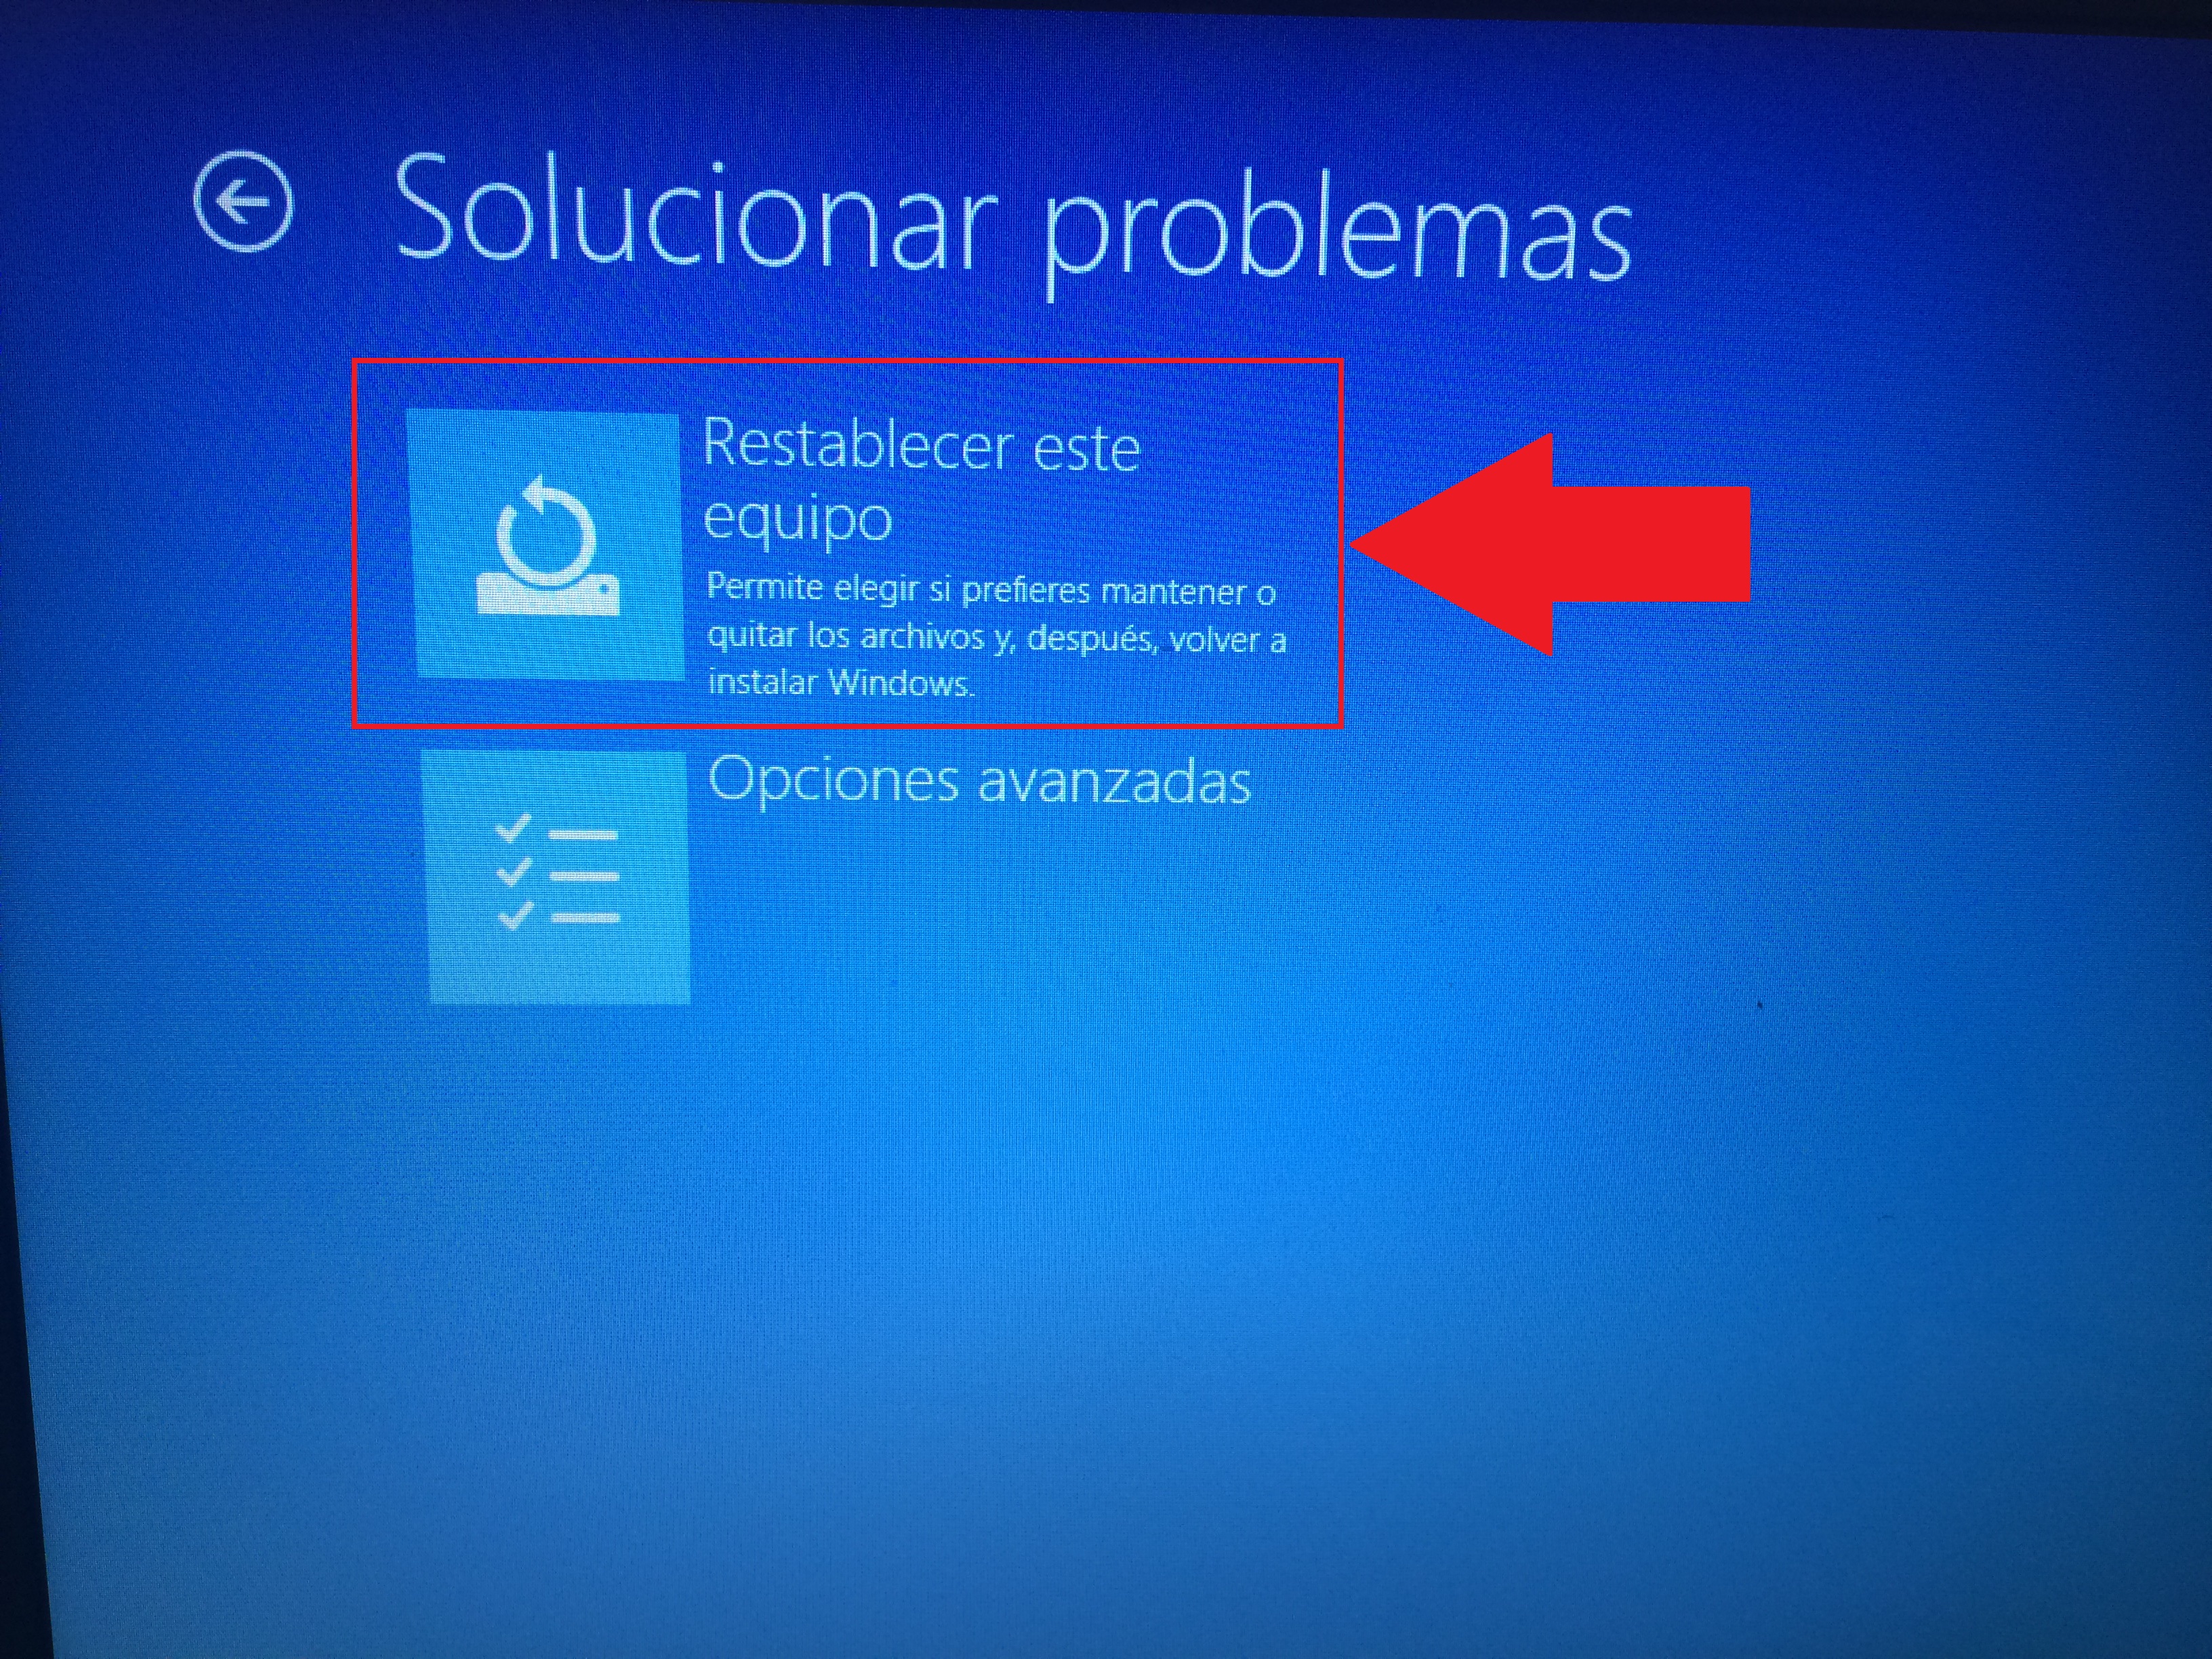 restablecer tu sistema operativo Windows 10 manteniendo tus archivos y solucionar asi muchos problemas